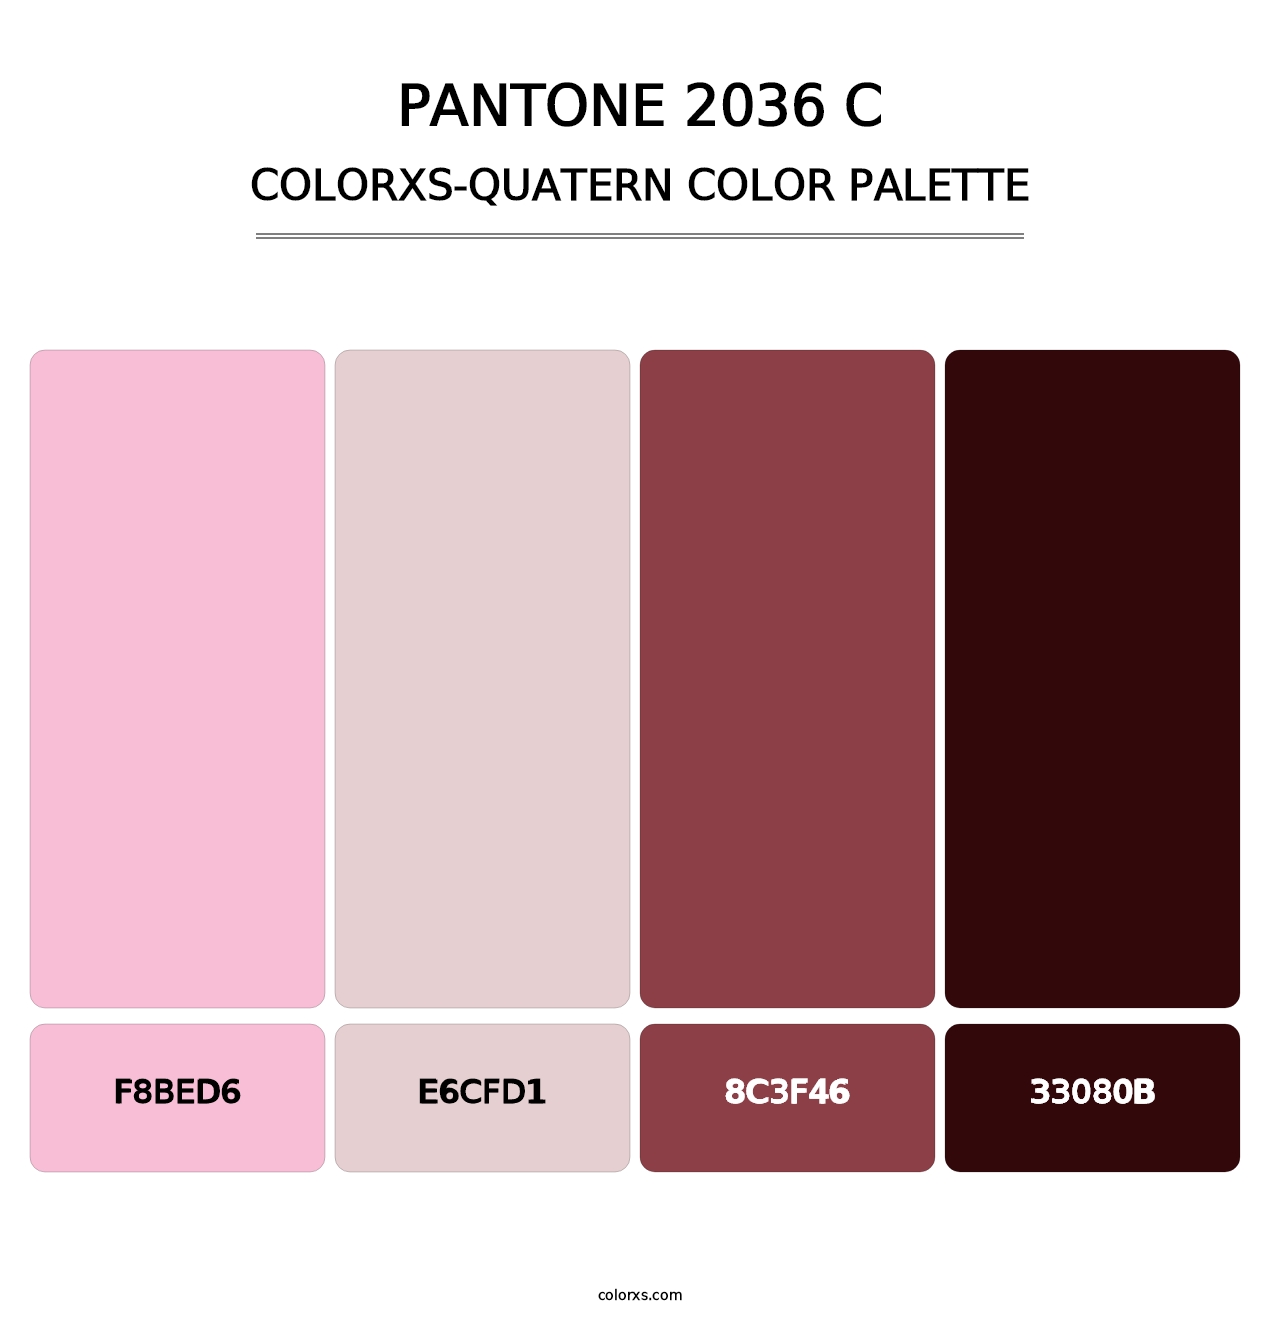 PANTONE 2036 C - Colorxs Quatern Palette